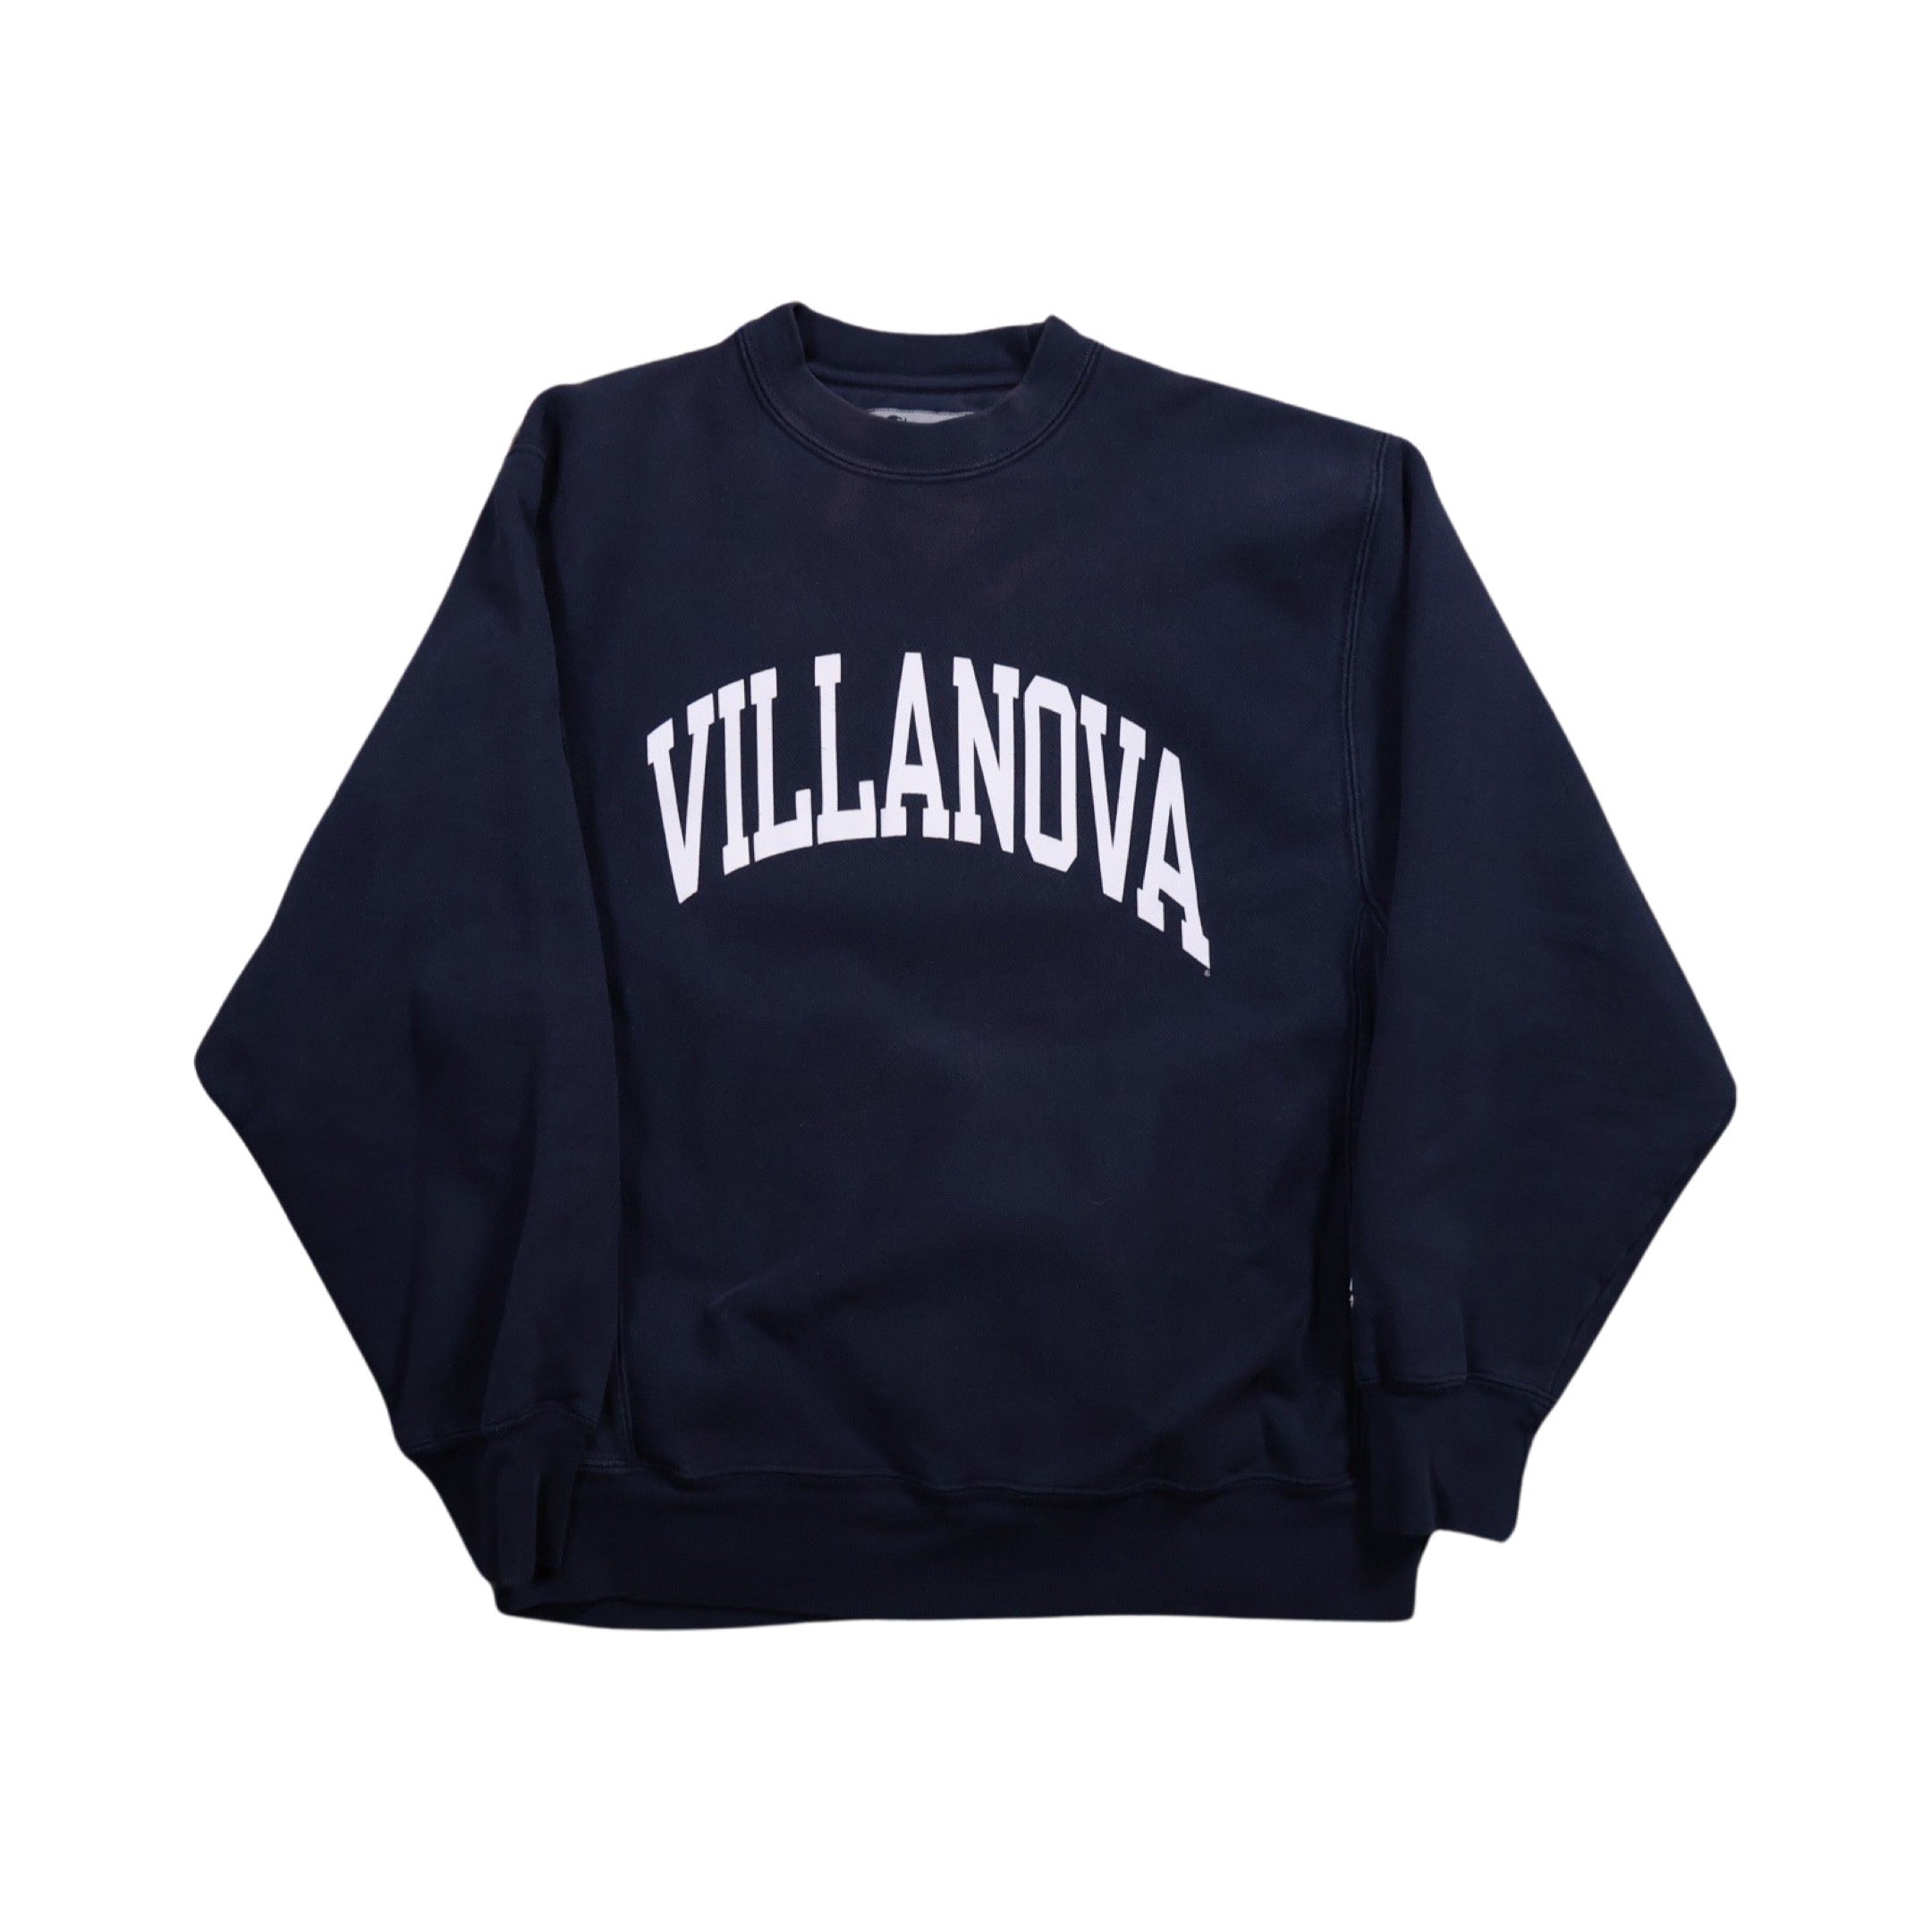 Villanova 00s Champion Reverse Weave Sweater (Small)